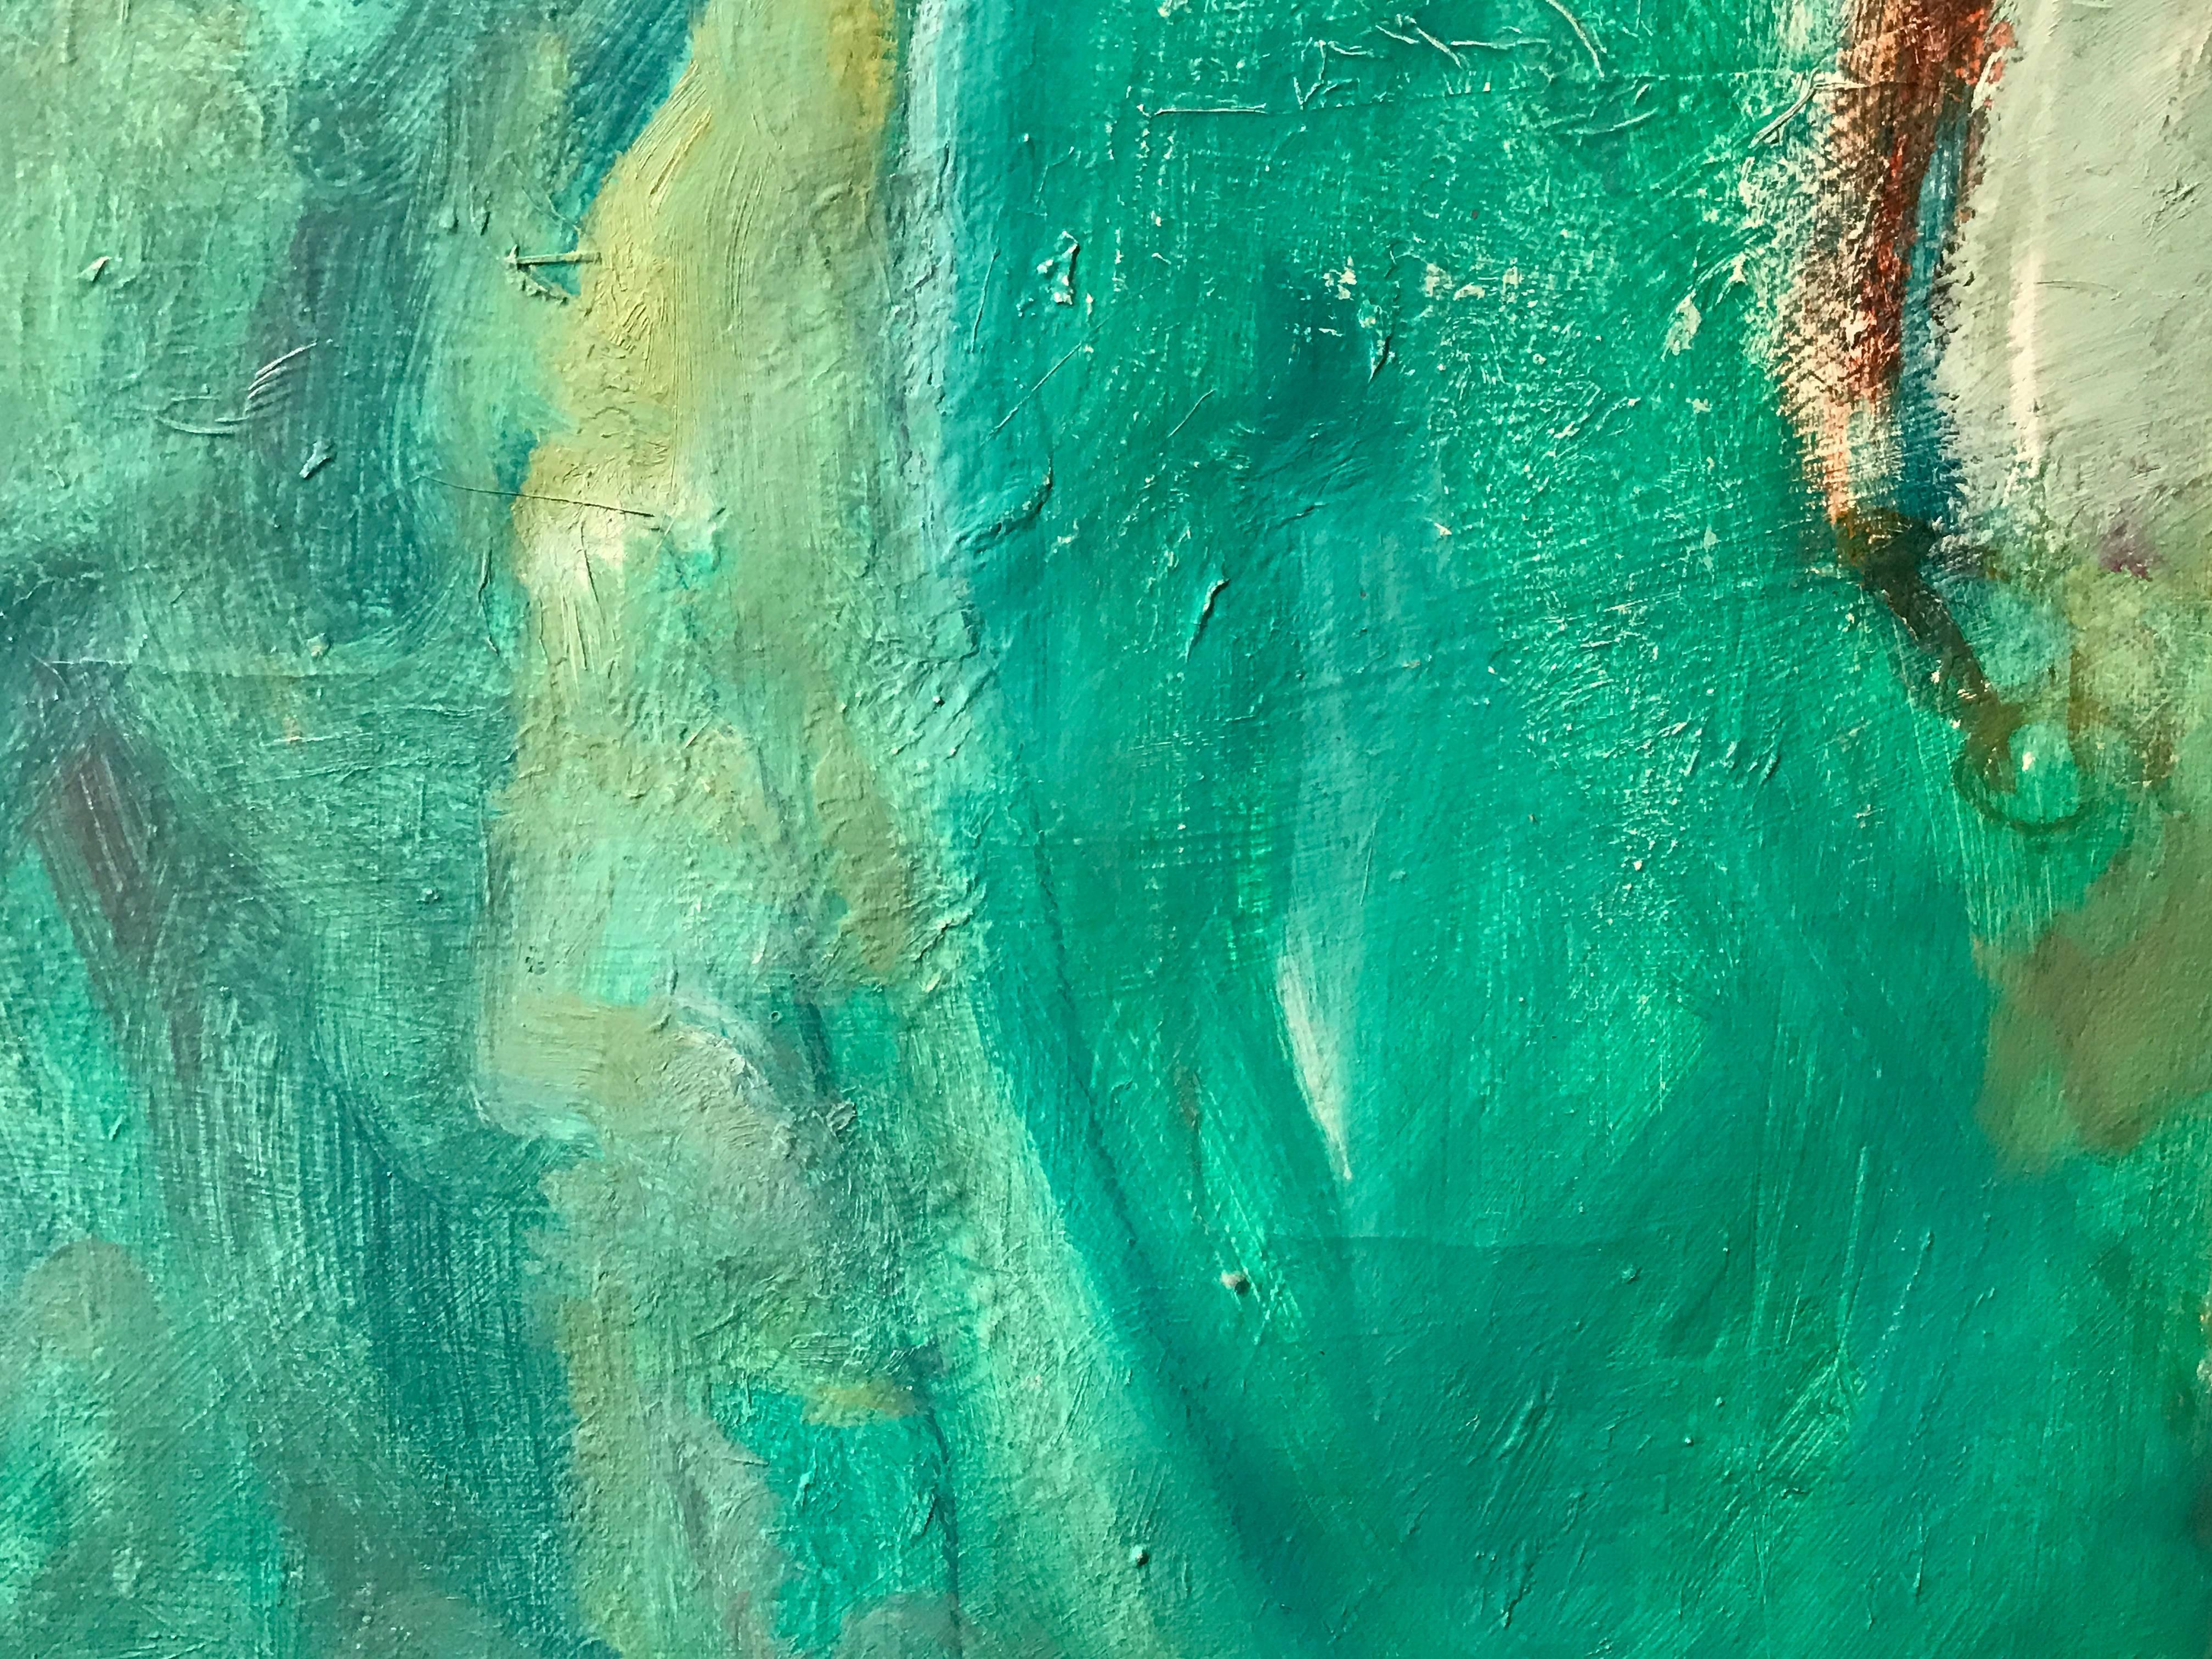 Superbe et très grande peinture à l'huile post-impressionniste française représentant cette peinture à l'huile abstraite profondément colorée présentant un mélange et une gamme de couleurs incroyables - aigue-marine, turquoise, verts, bleus, violets